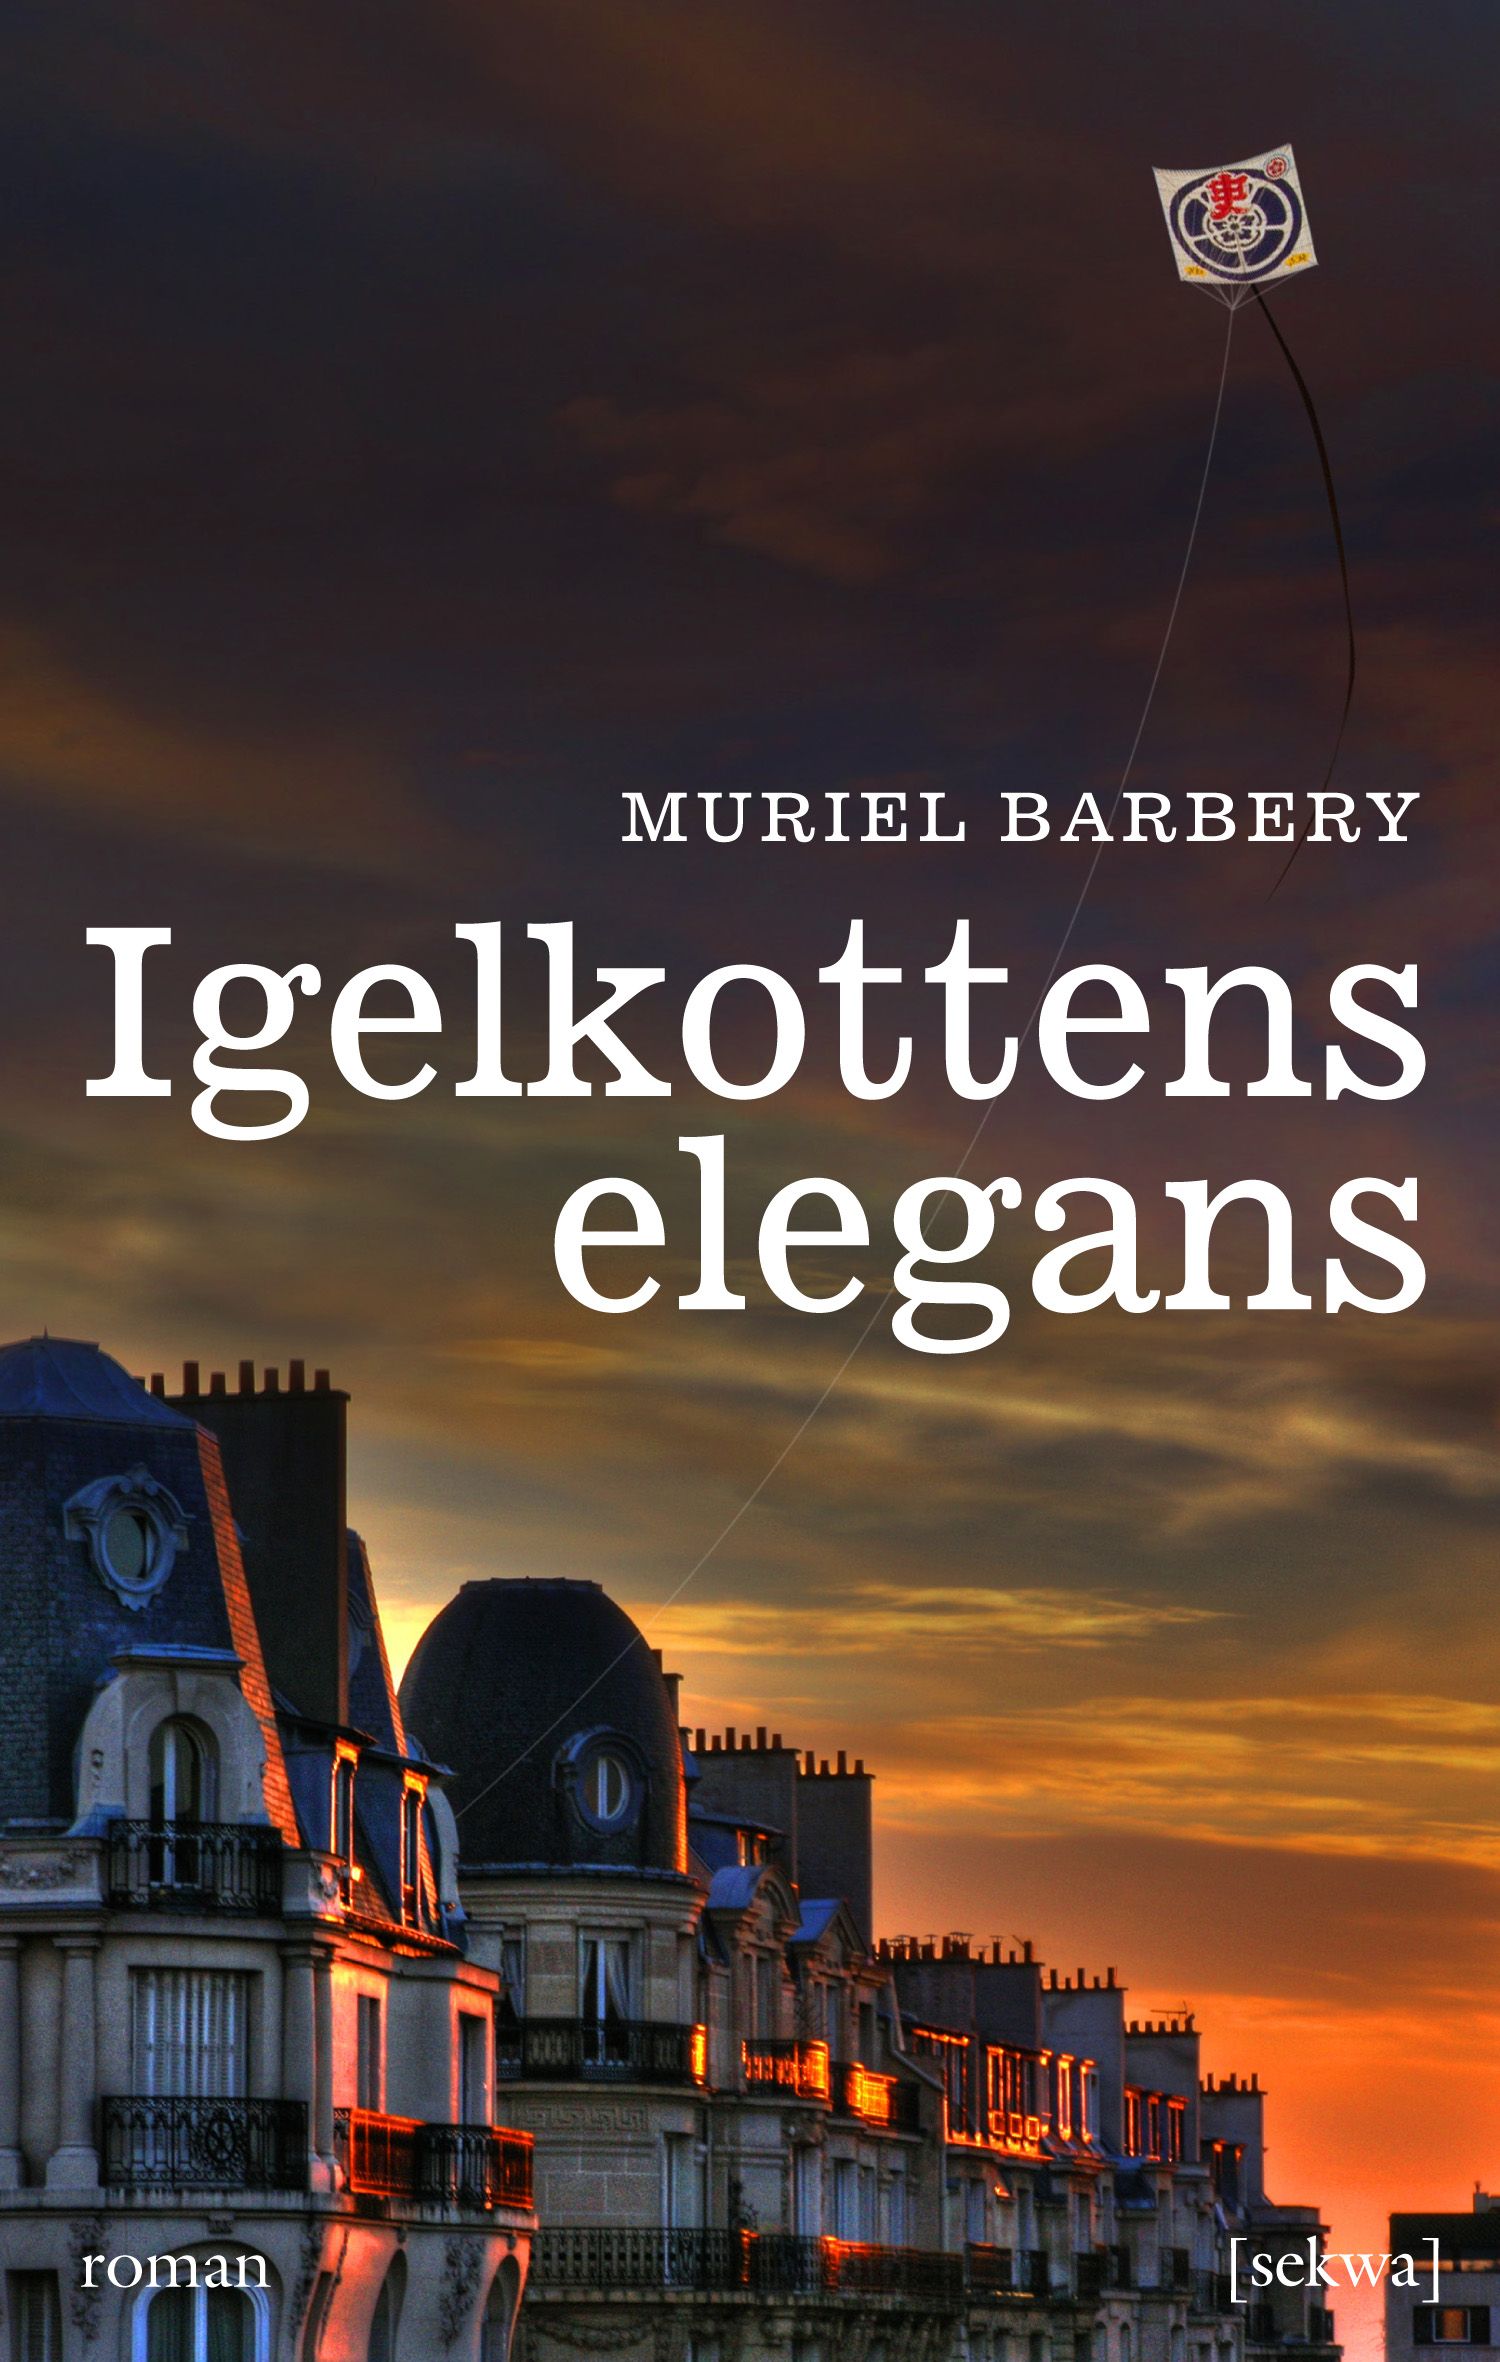 Igelkottens elegans, e-bok av Muriel Barbery